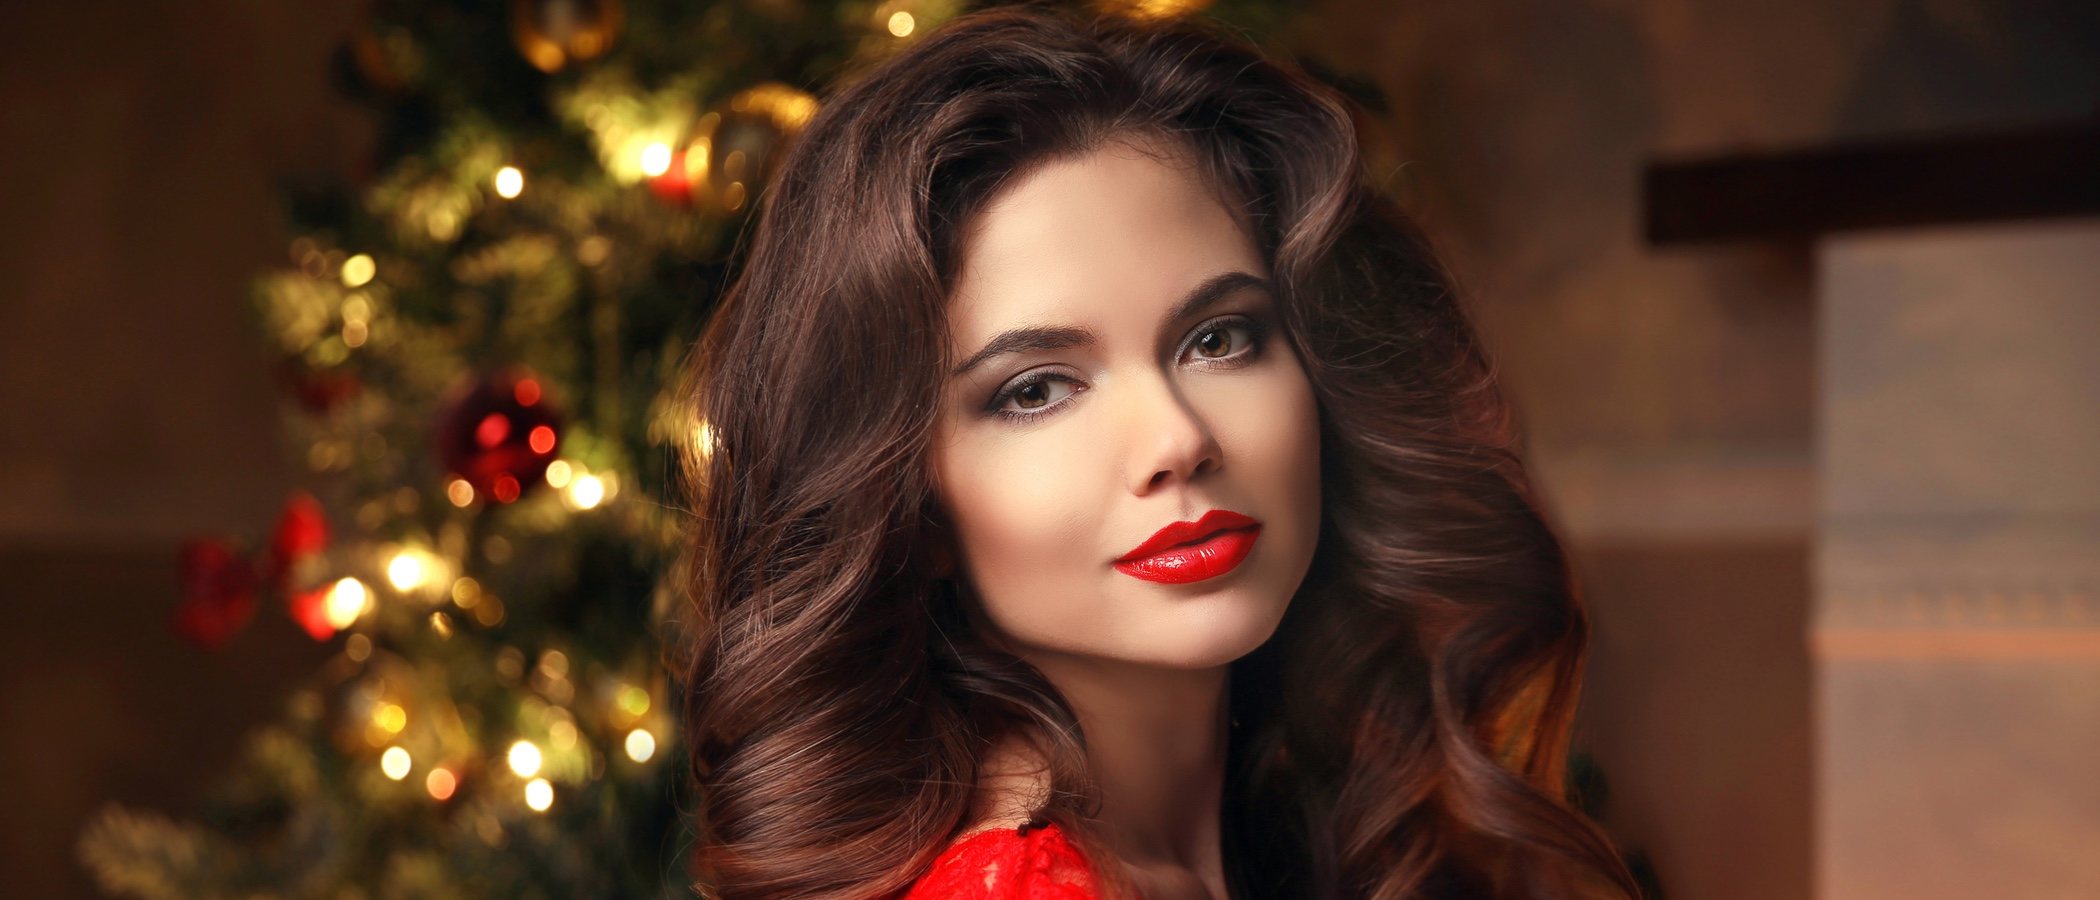 Cómo maquillarse para Navidad 2018 siguiendo las tendencias del momento